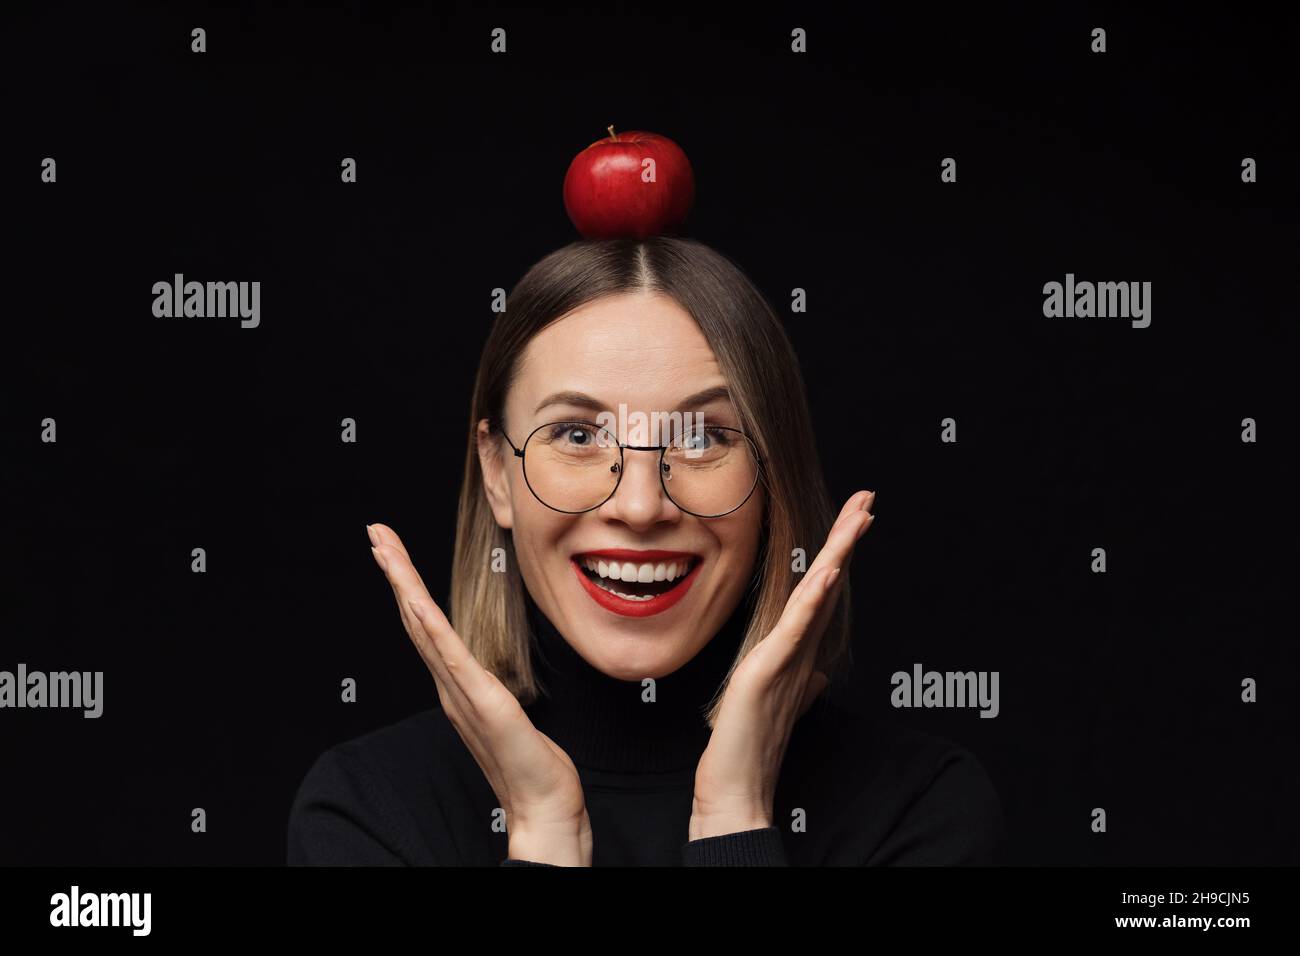 Gros plan surprise femme portrait portant des lunettes avec des cadres noirs, avec des lèvres rouges, regardant l'appareil photo avec une pomme rouge sur la tête sur fond noir. Banque D'Images